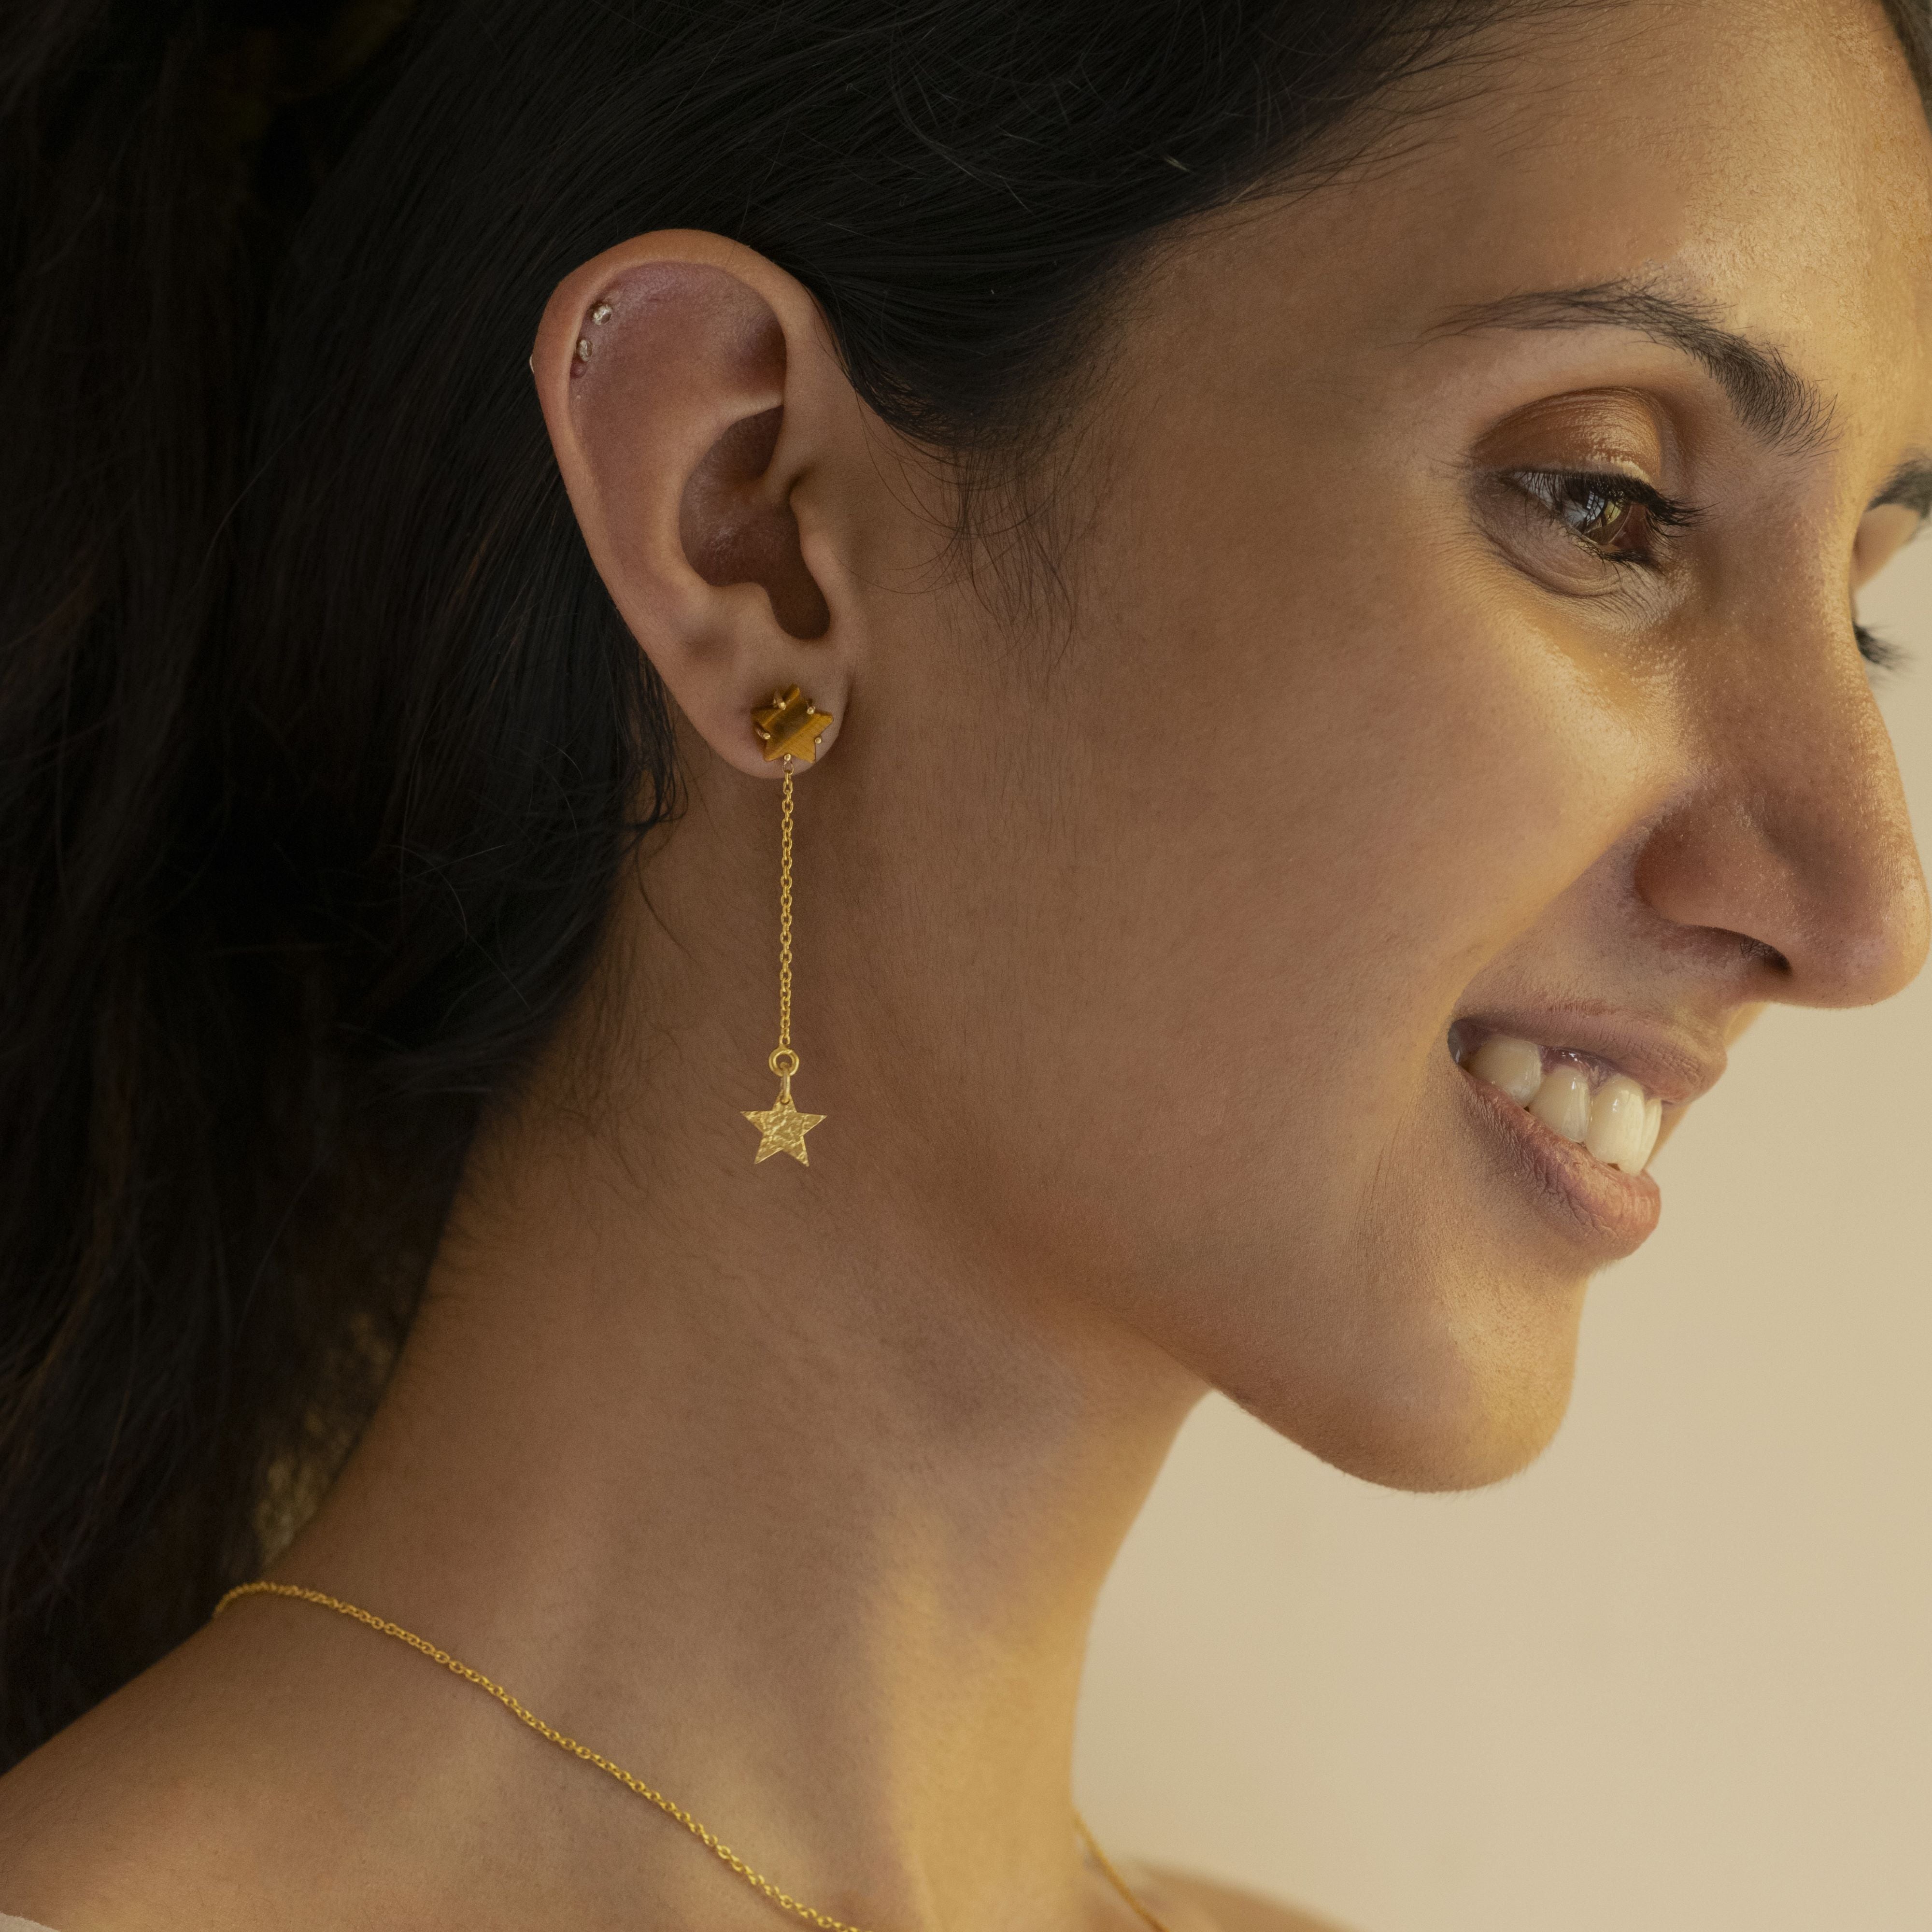 22k Gold Threader Earrings Solid Gold Earrings Long Chain Threader Earrings  Indian Gold Threader Earrings Solid Gold Chain Earrings Lon - Etsy